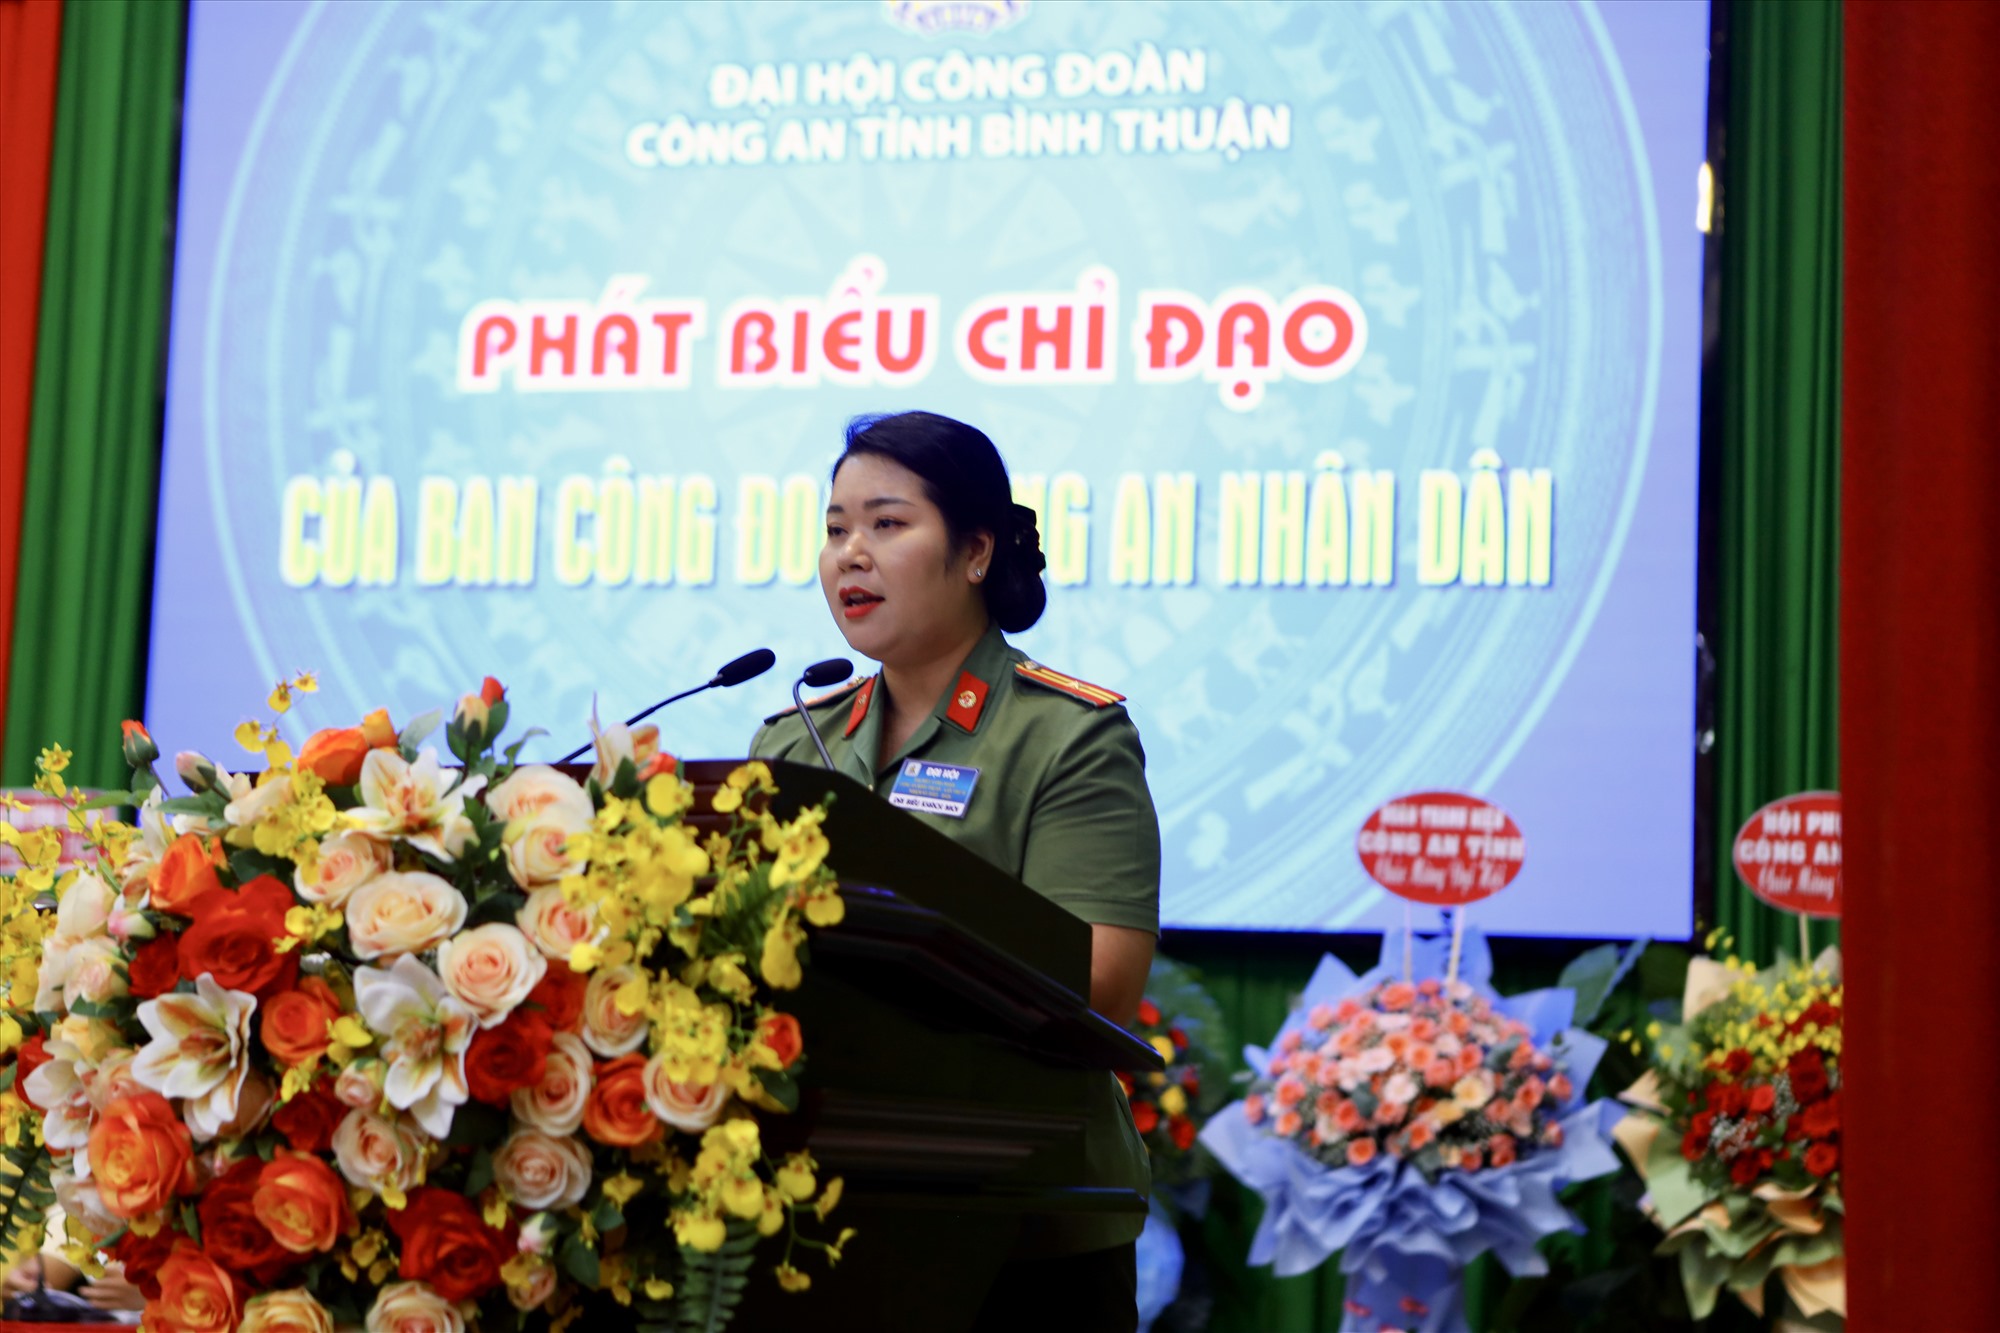 Thiếu tá Nguyễn Thanh Hiền, phó trưởng ban công đoàn Công an nhân dân phát biểu chỉ đạo đại hội. Ảnh: Duy Tuấn